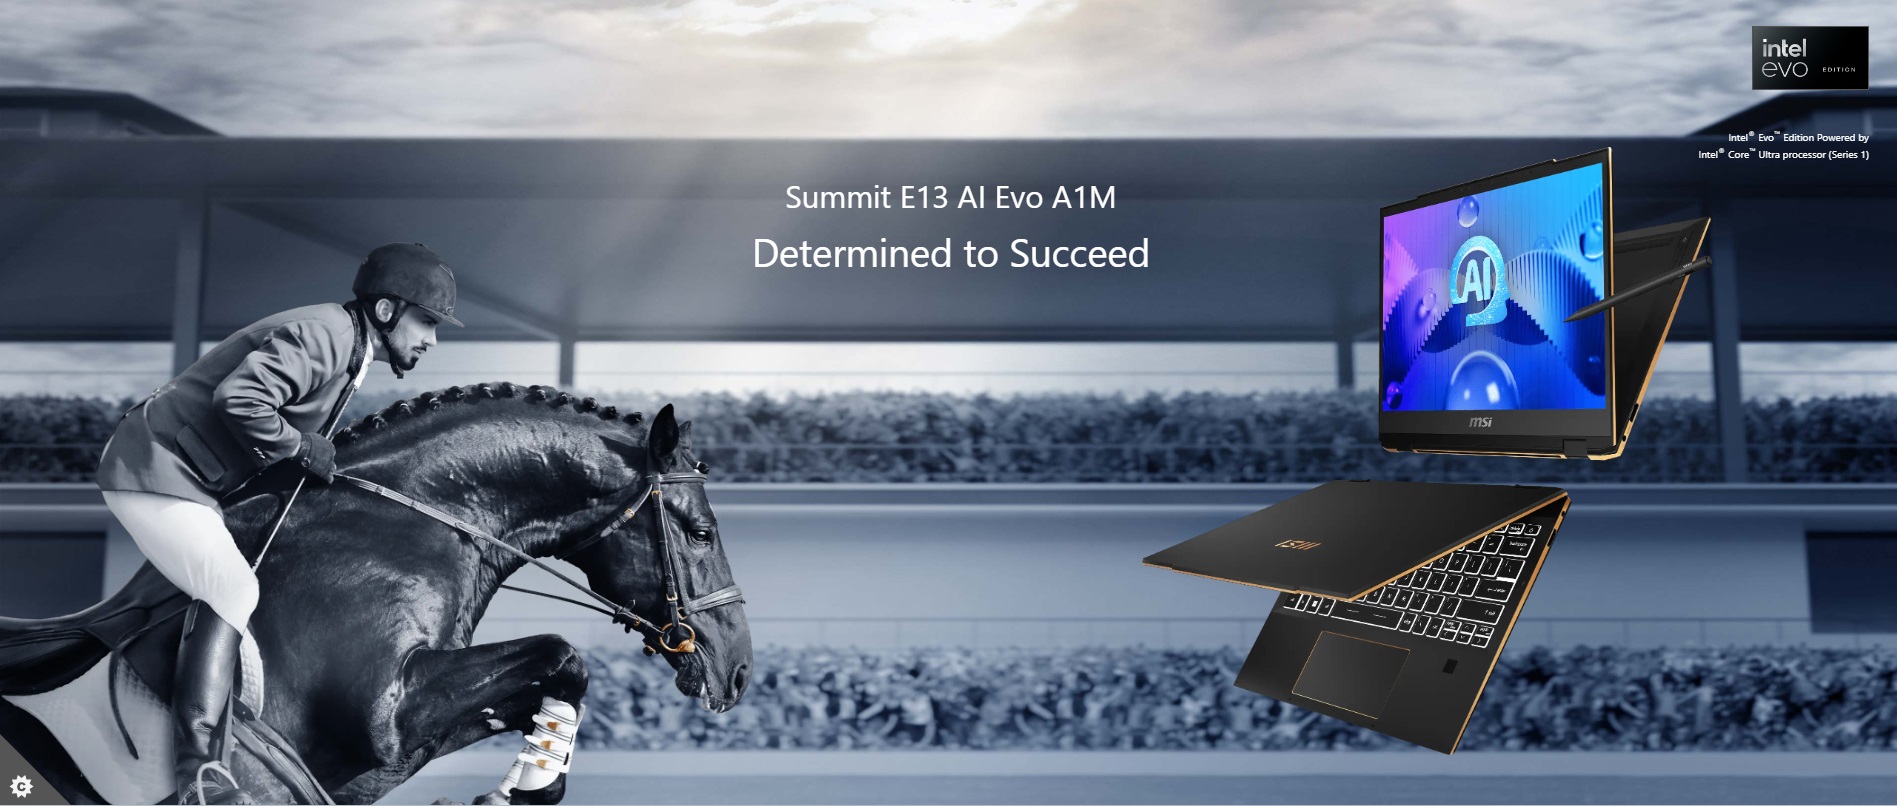 Лаптоп MSI - Summit E13 AI Evo